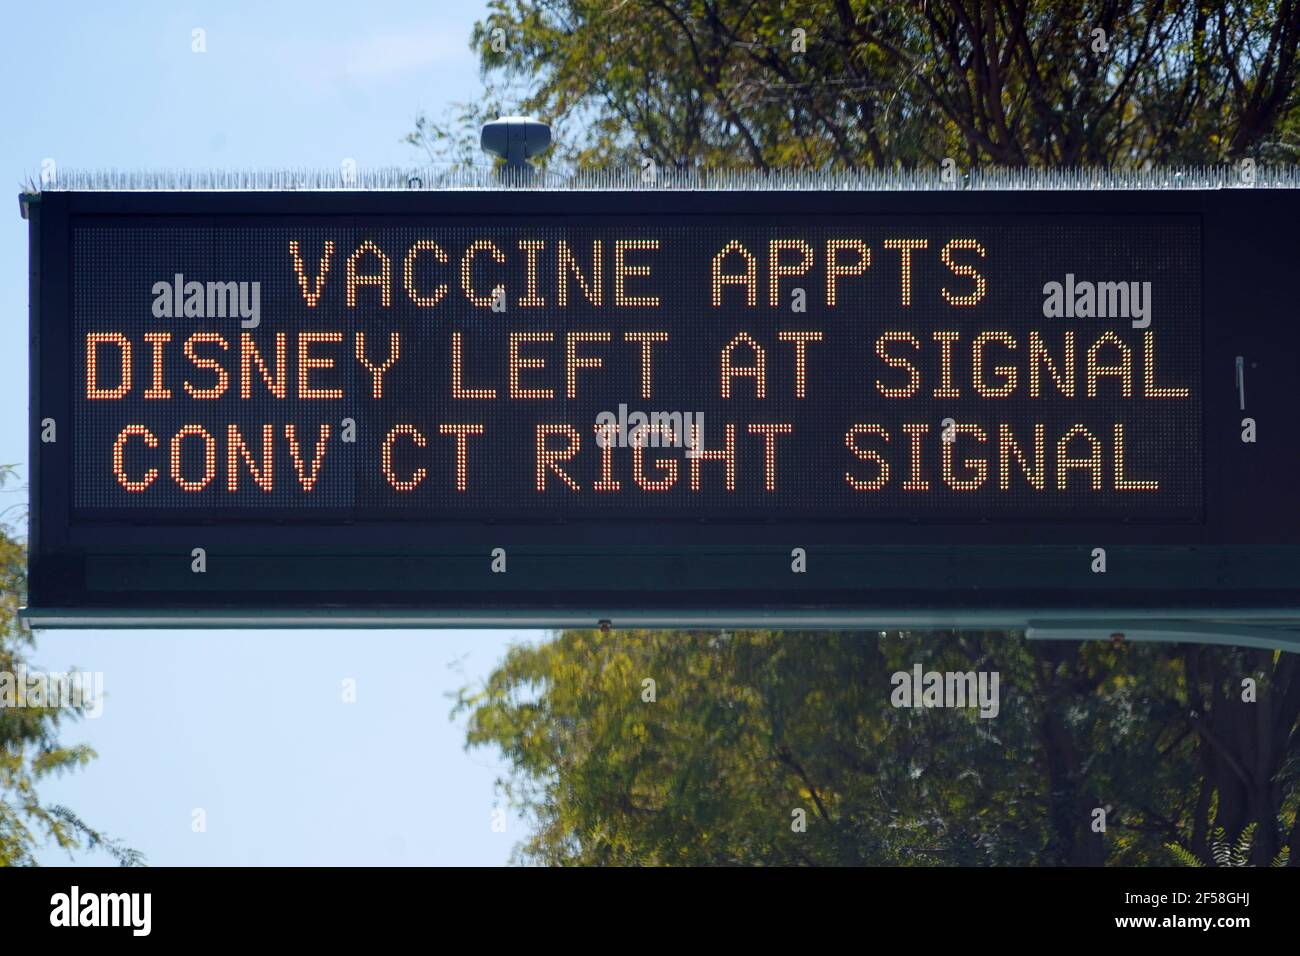 Un cartello per gli appuntamenti con i vaccini su W. Katella Ave. Presso il sito di vaccinazione di massa COVID-19 del Super Point-of-Distribution Coronavirus in un parcheggio Disneyland, Foto Stock